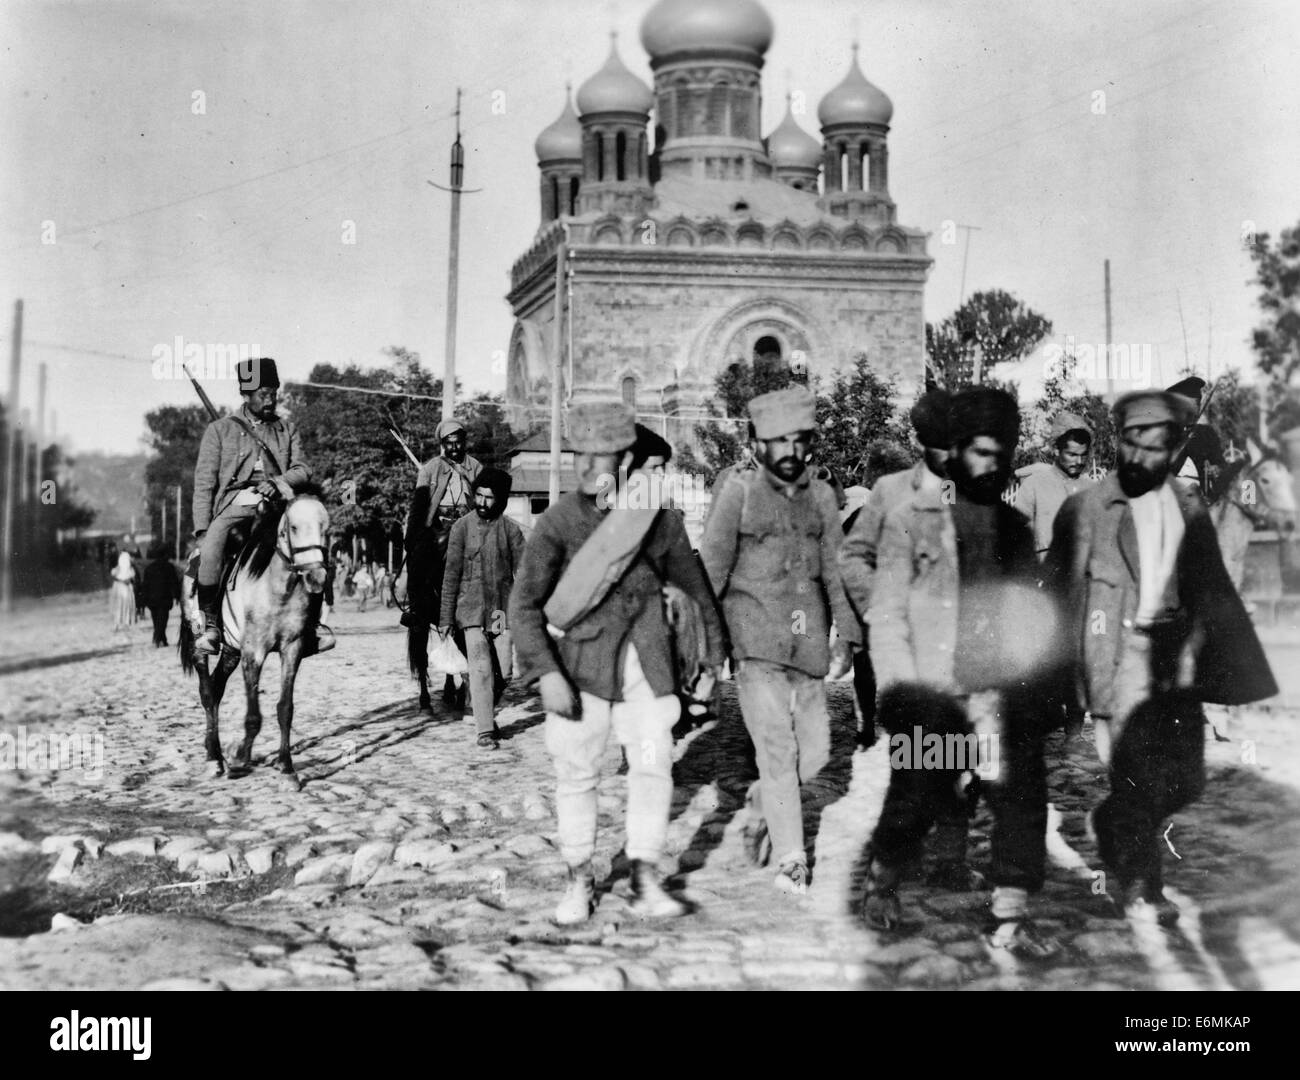 Les soldats arméniens réunissant dans un groupe de prisonniers, ces hommes étaient des déserteurs de l'armée arménienne - Résumé : Les hommes de marcher en face de soldats à cheval sur une rue pavée ; en arrière-plan. Octobre 1919 Banque D'Images